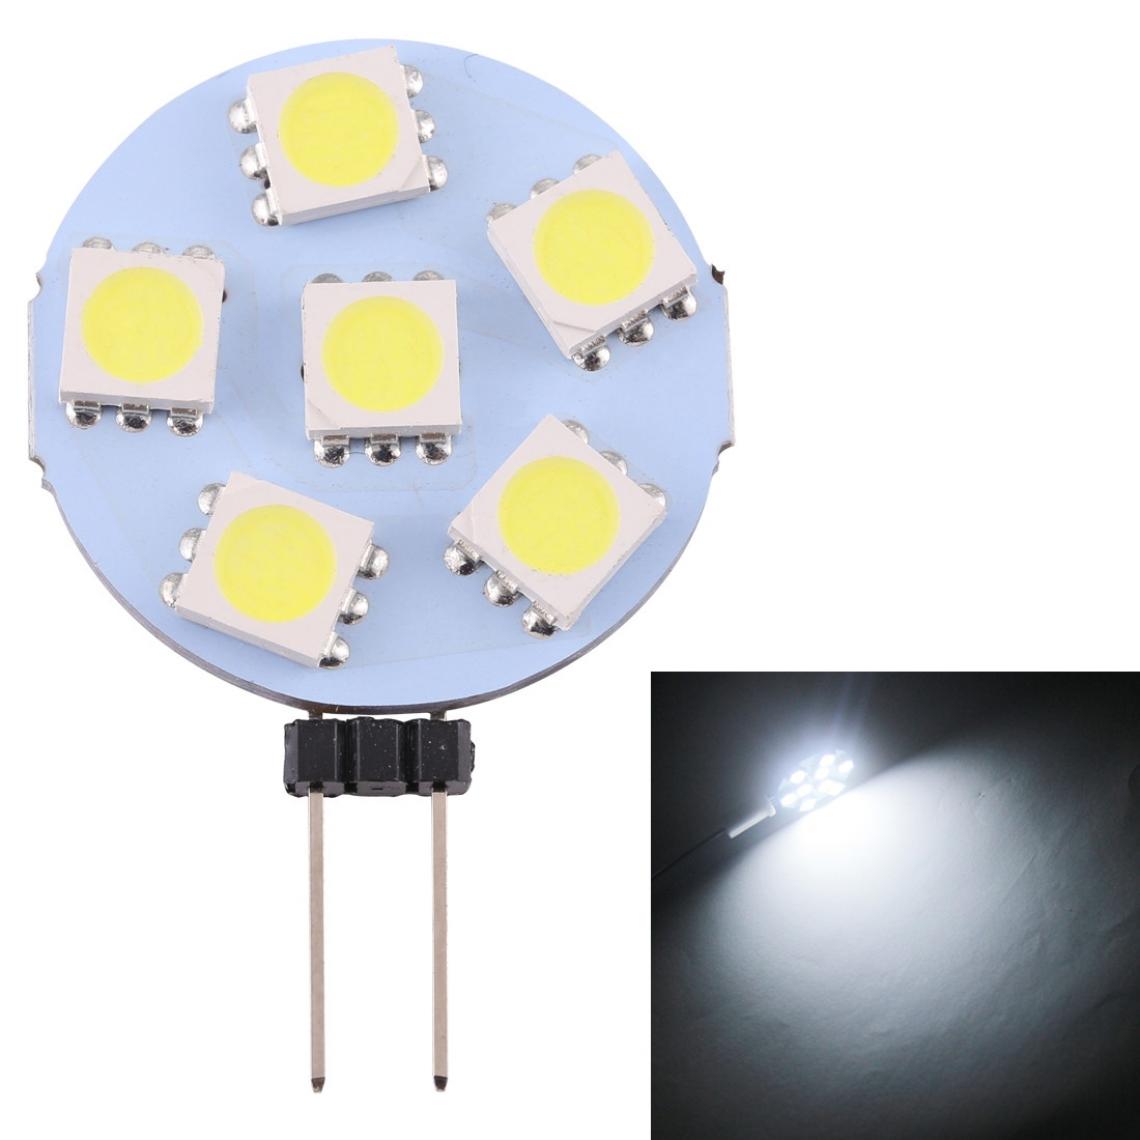 Wewoo - G4 6 LEDs SMD 5050 72LM 6000-6500K Ampoule de lampe de base à broche à économie d'énergie à intensité variableDC 12V lumière blanche - Ampoules LED